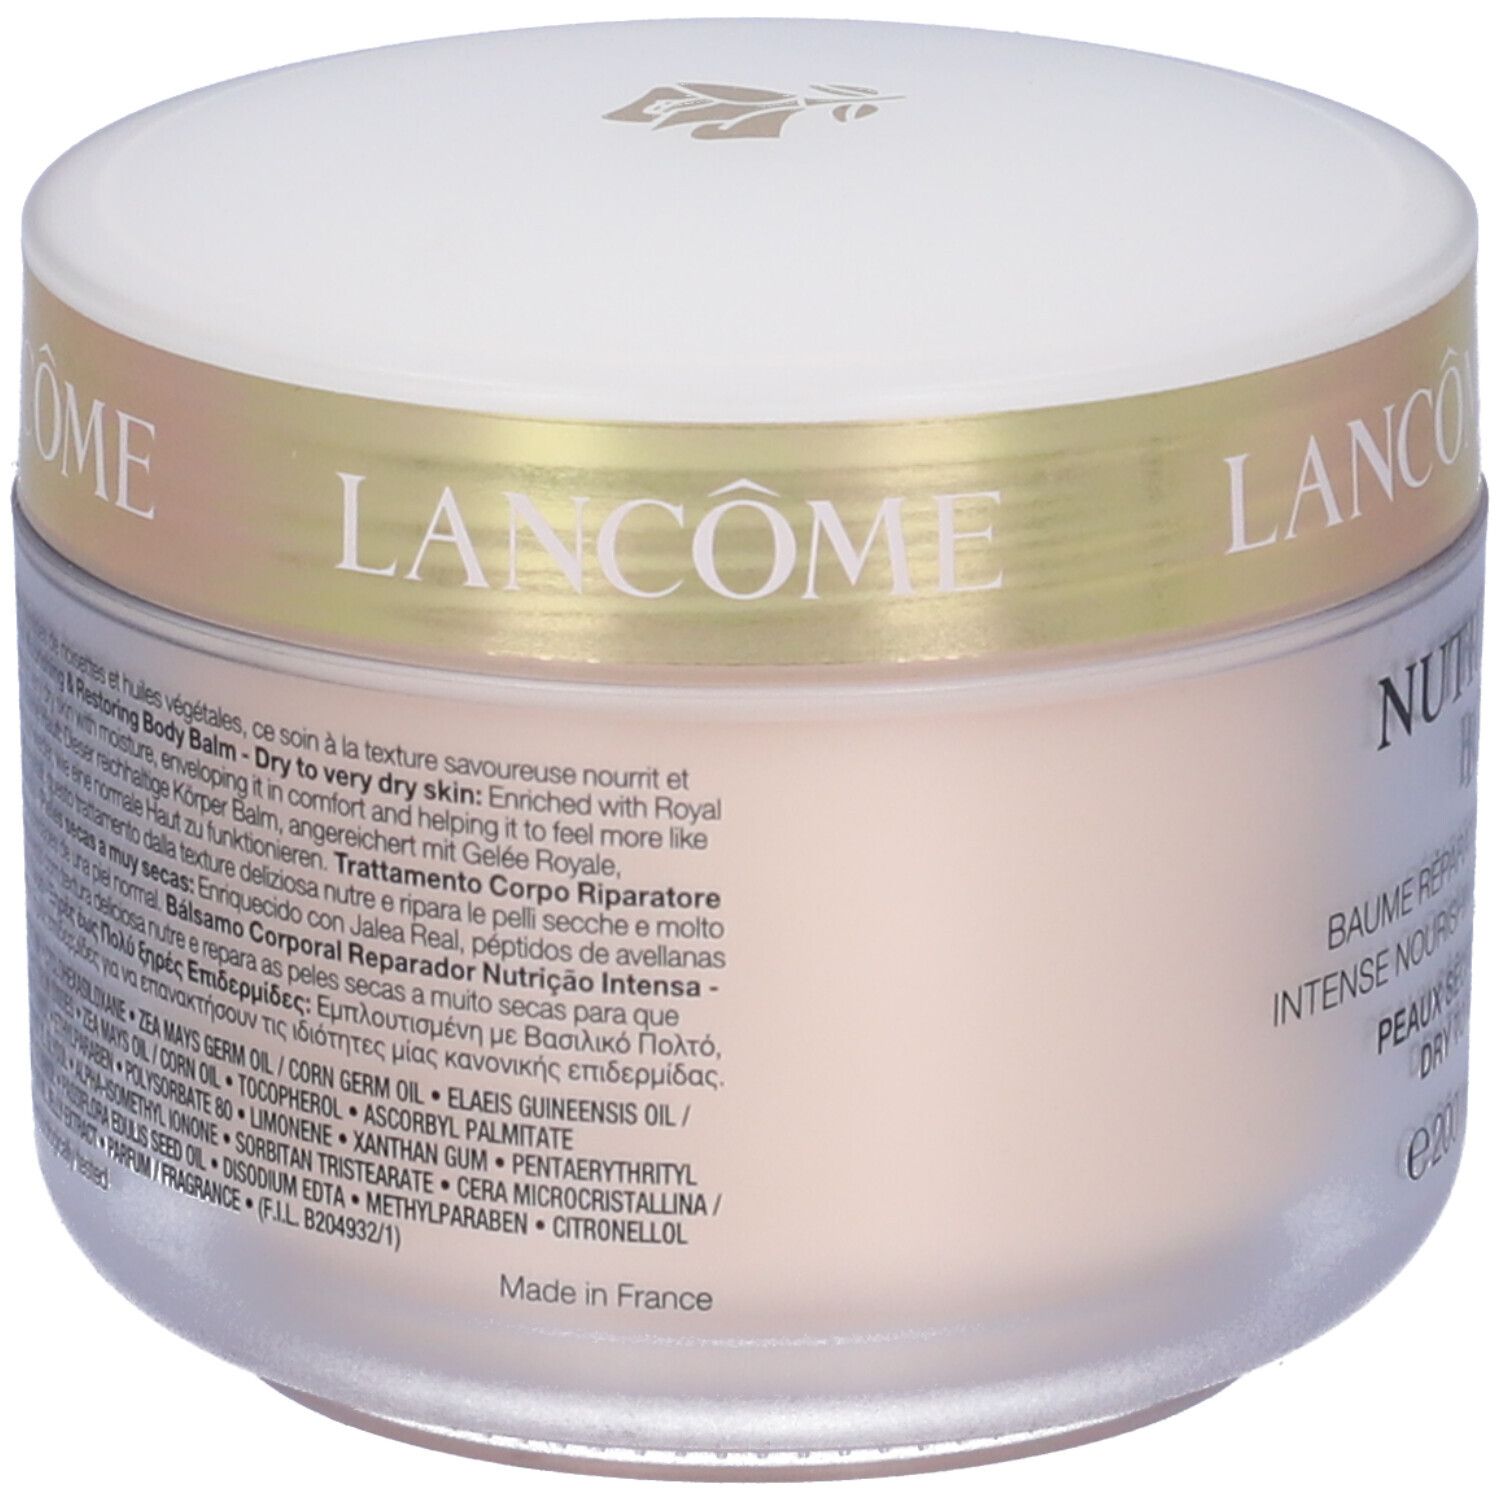 Lancôme, Nutrix Royal Body Crème